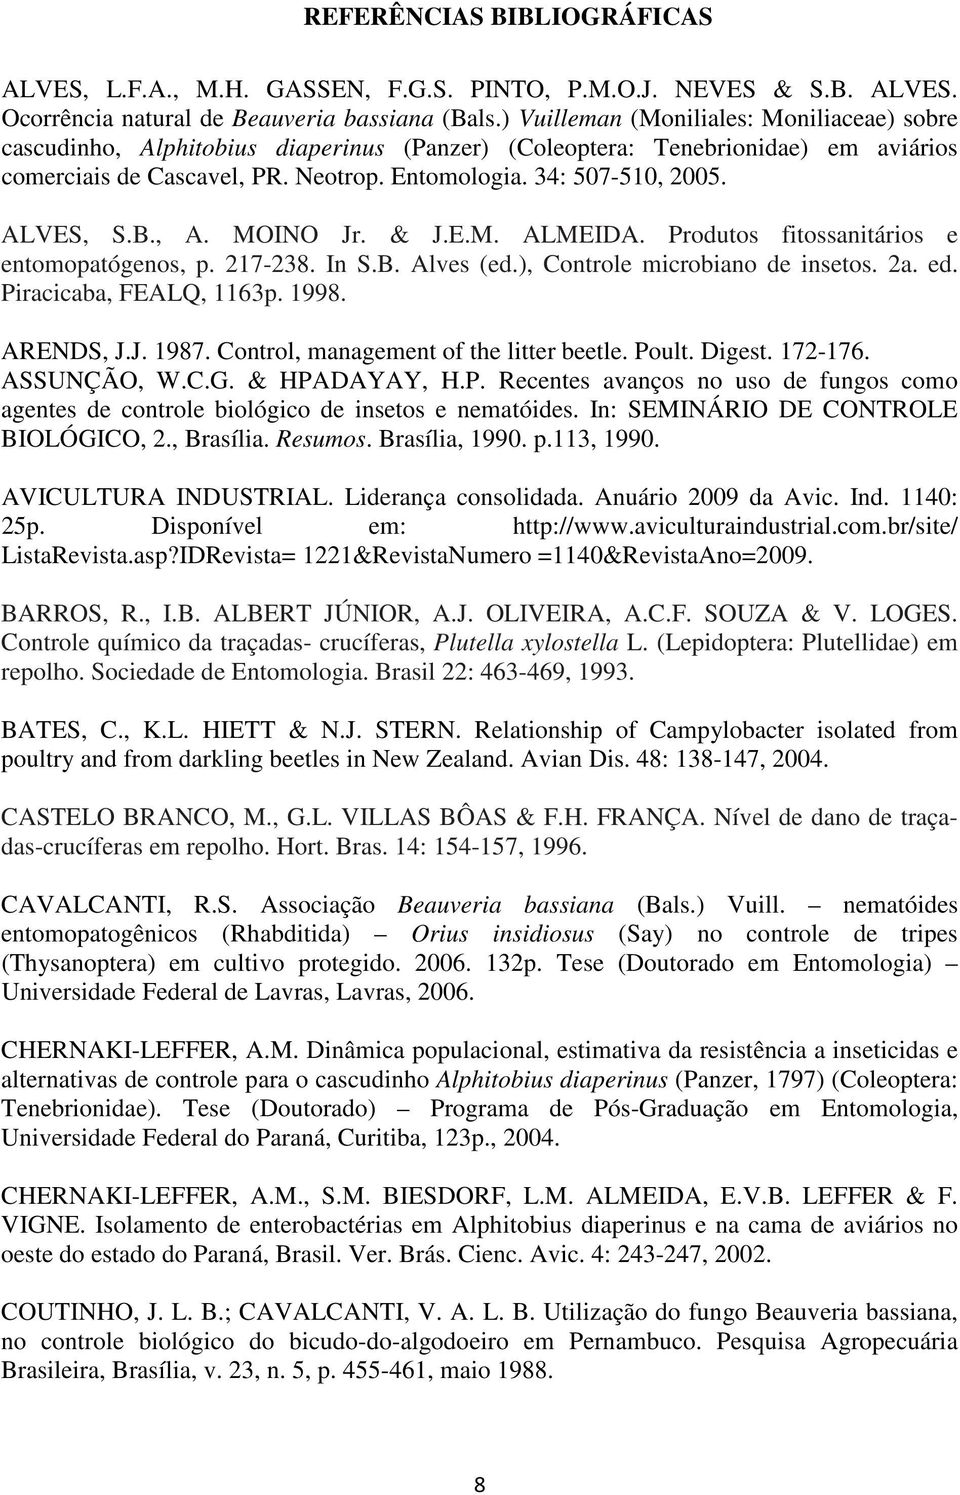 ALVES, S.B., A. MOINO Jr. & J.E.M. ALMEIDA. Produtos fitossanitários e entomopatógenos, p. 217-238. In S.B. Alves (ed.), Controle microbiano de insetos. 2a. ed. Piracicaba, FEALQ, 1163p. 1998.